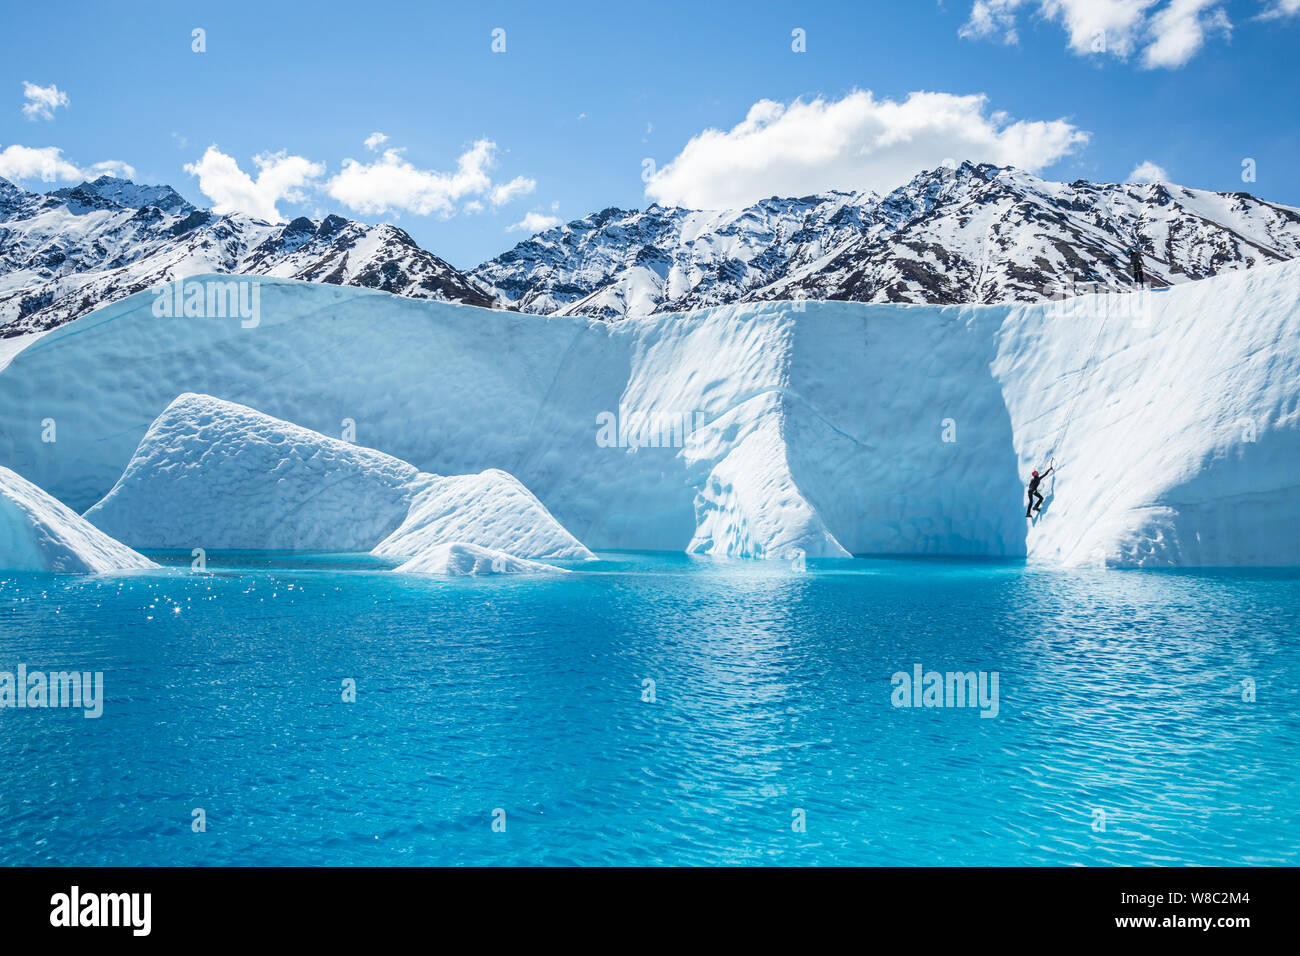 Massiccio lago blu sul ghiacciaio Matanuska con un alpinista ascendere fino da appena sopra il blu dell'acqua. Foto Stock